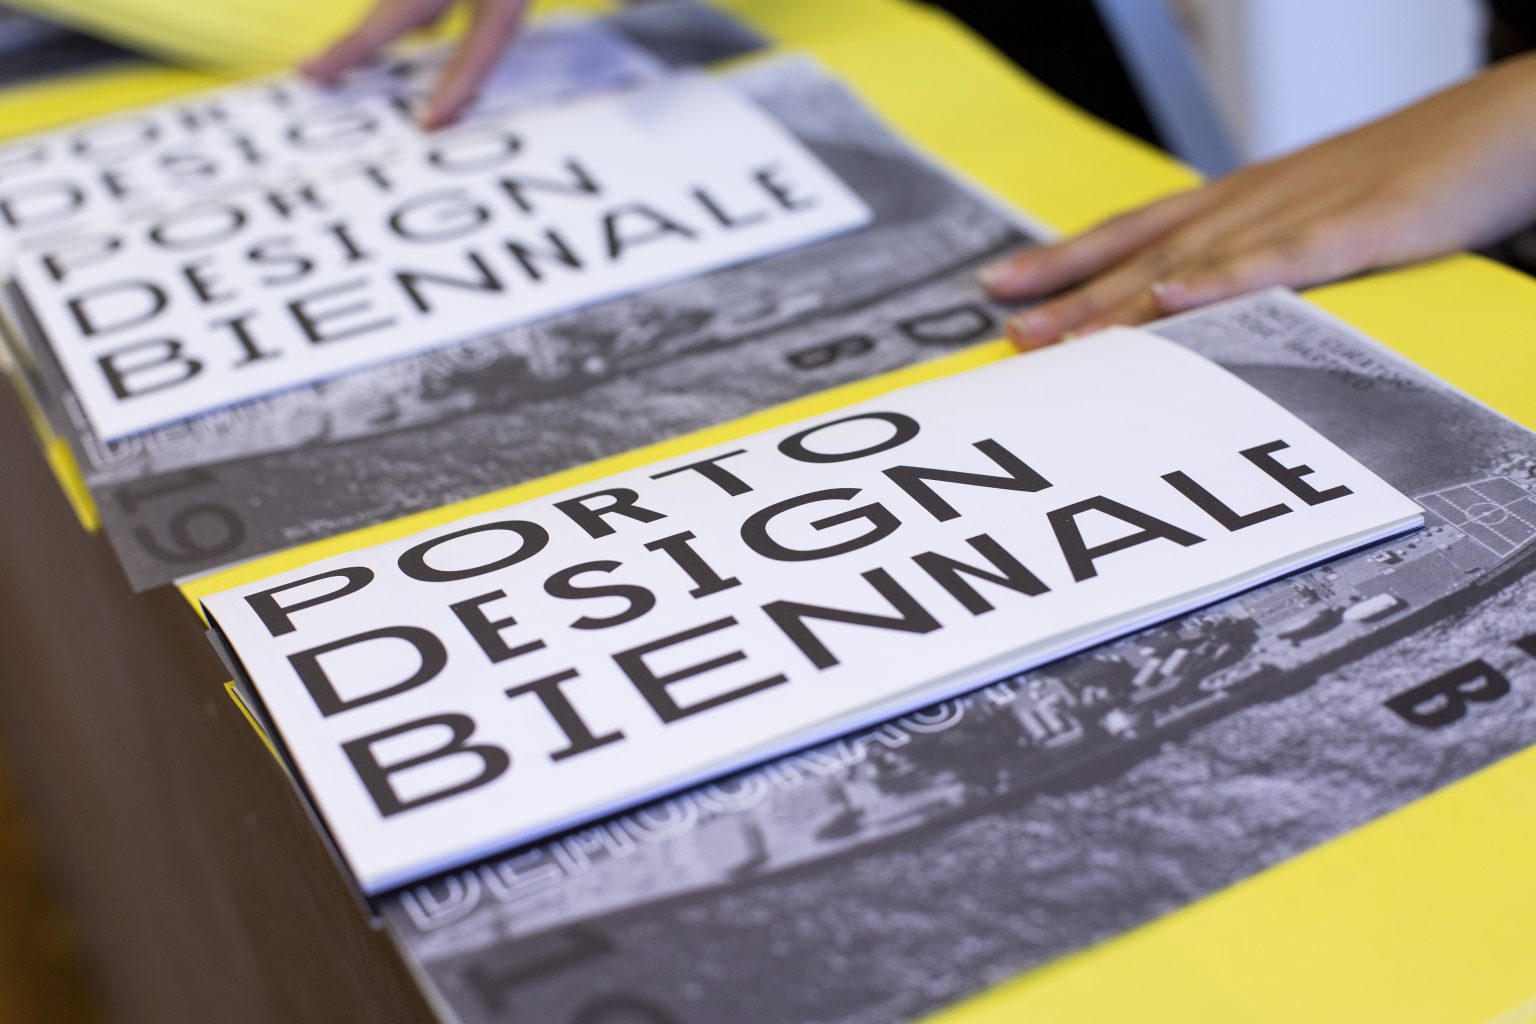 Porto Design Biennale 2019